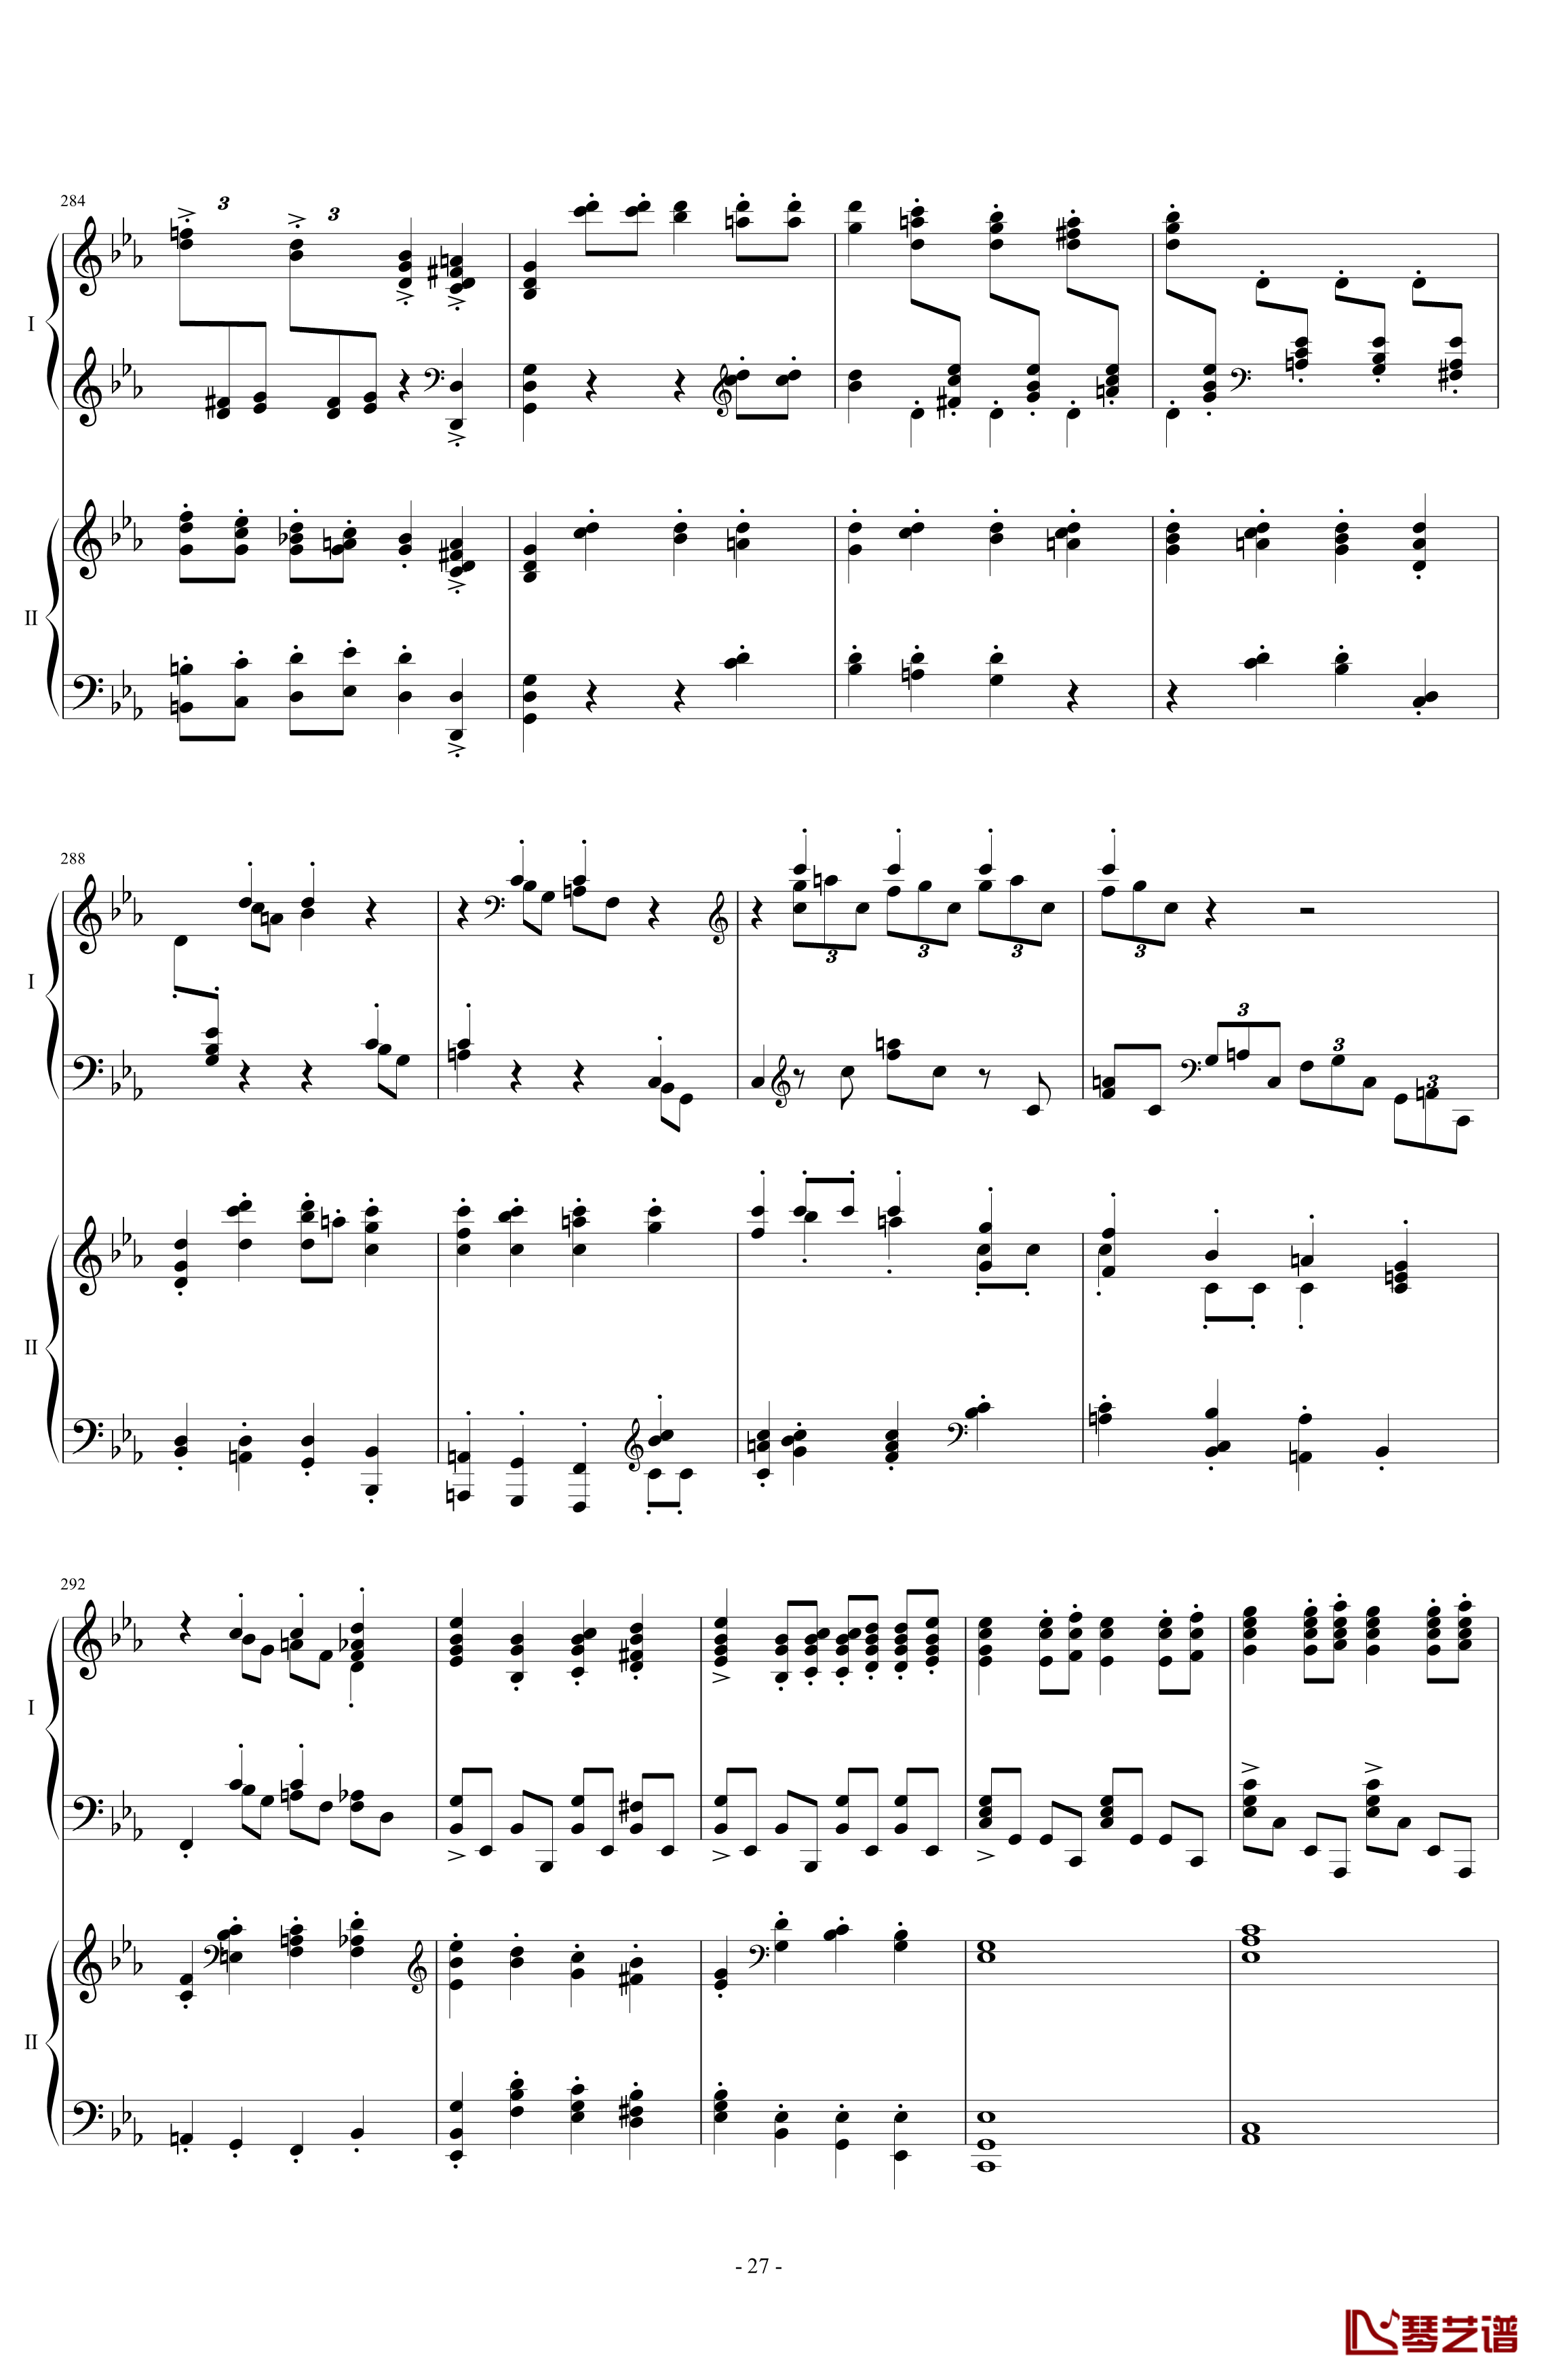 拉三第三乐章41页双钢琴钢琴谱-最难钢琴曲-拉赫马尼若夫27